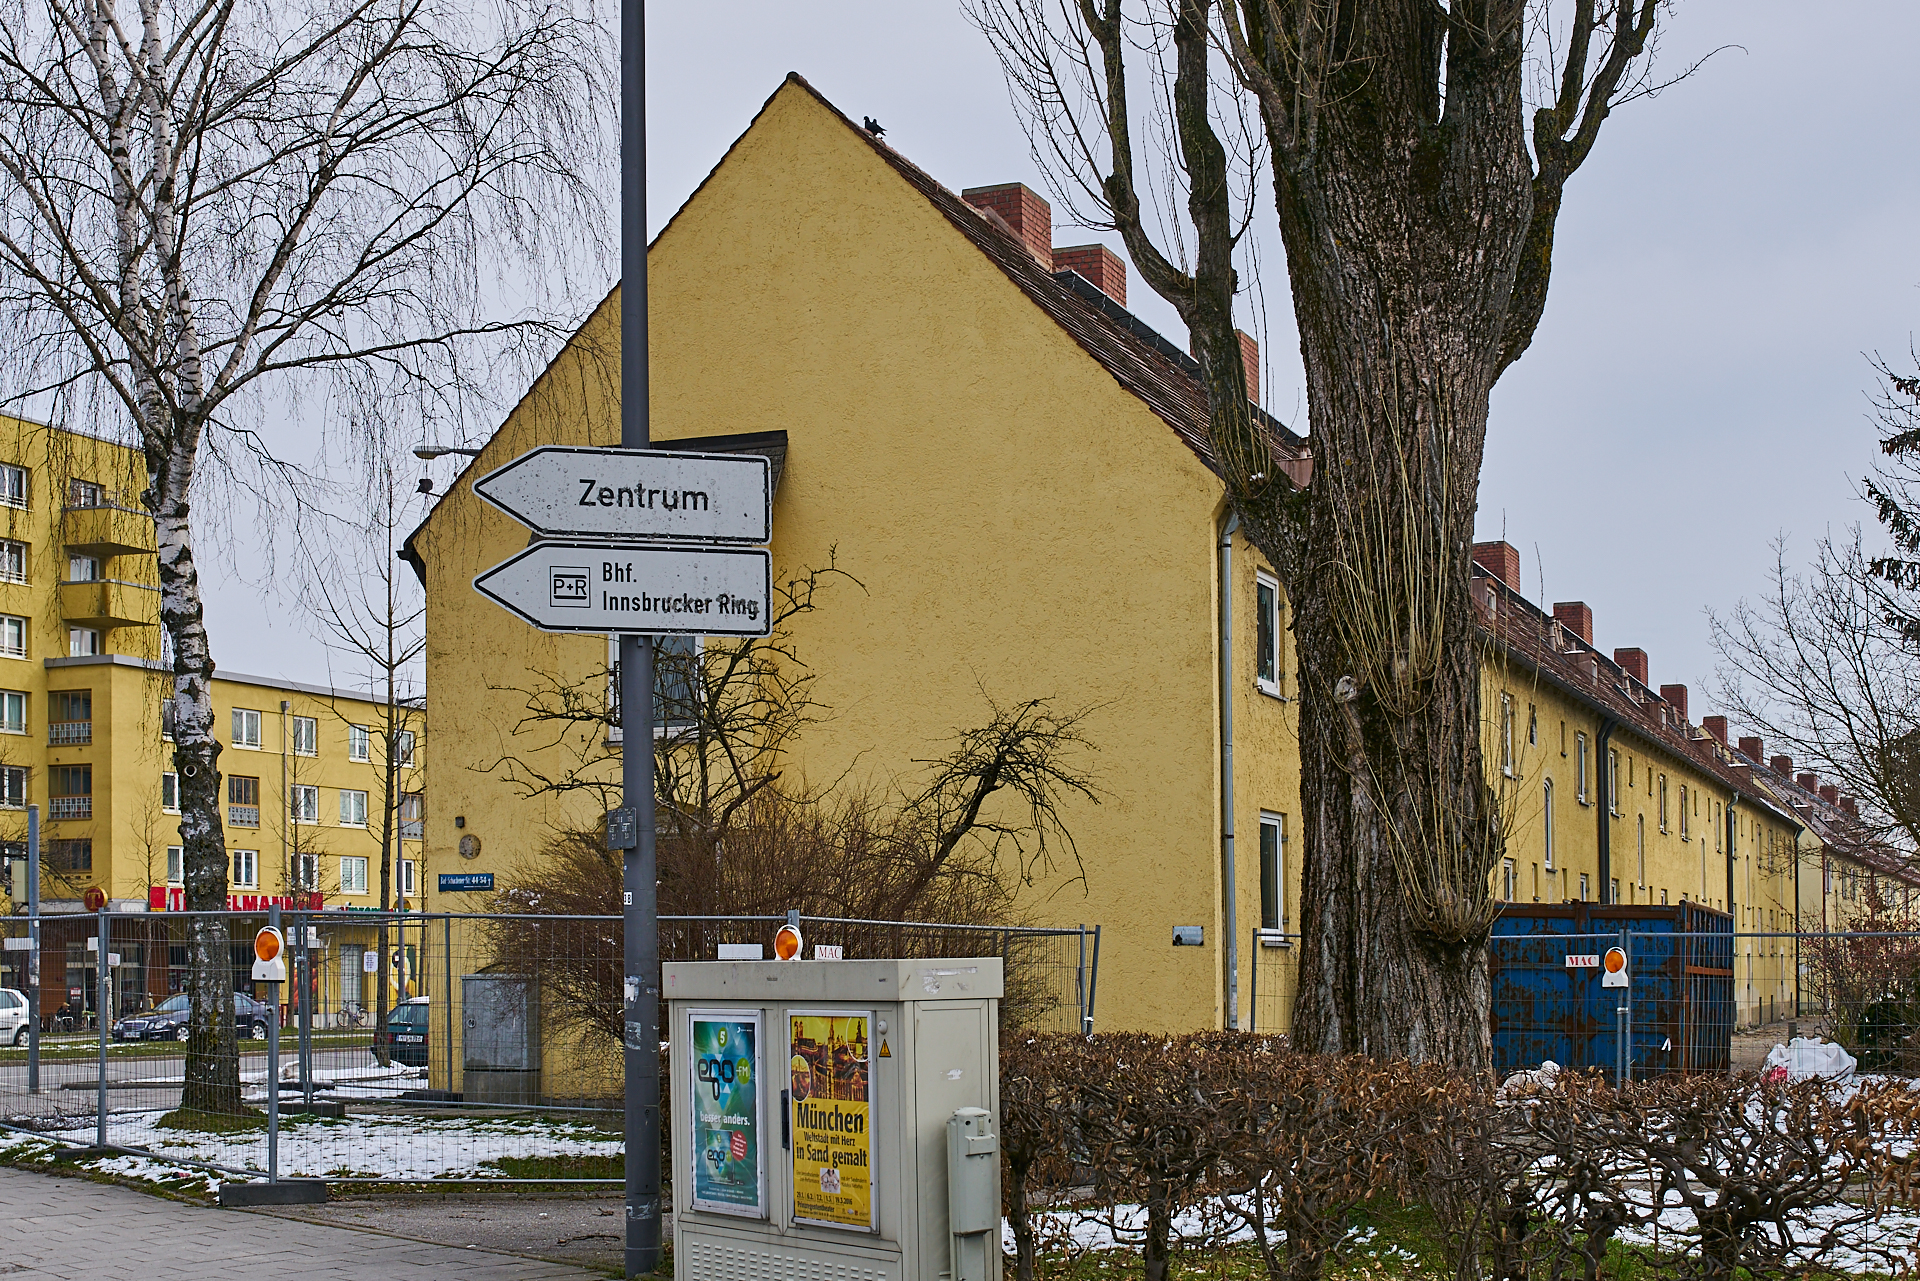 Neuperlach-maikaefersiedlung am 27.02.2016